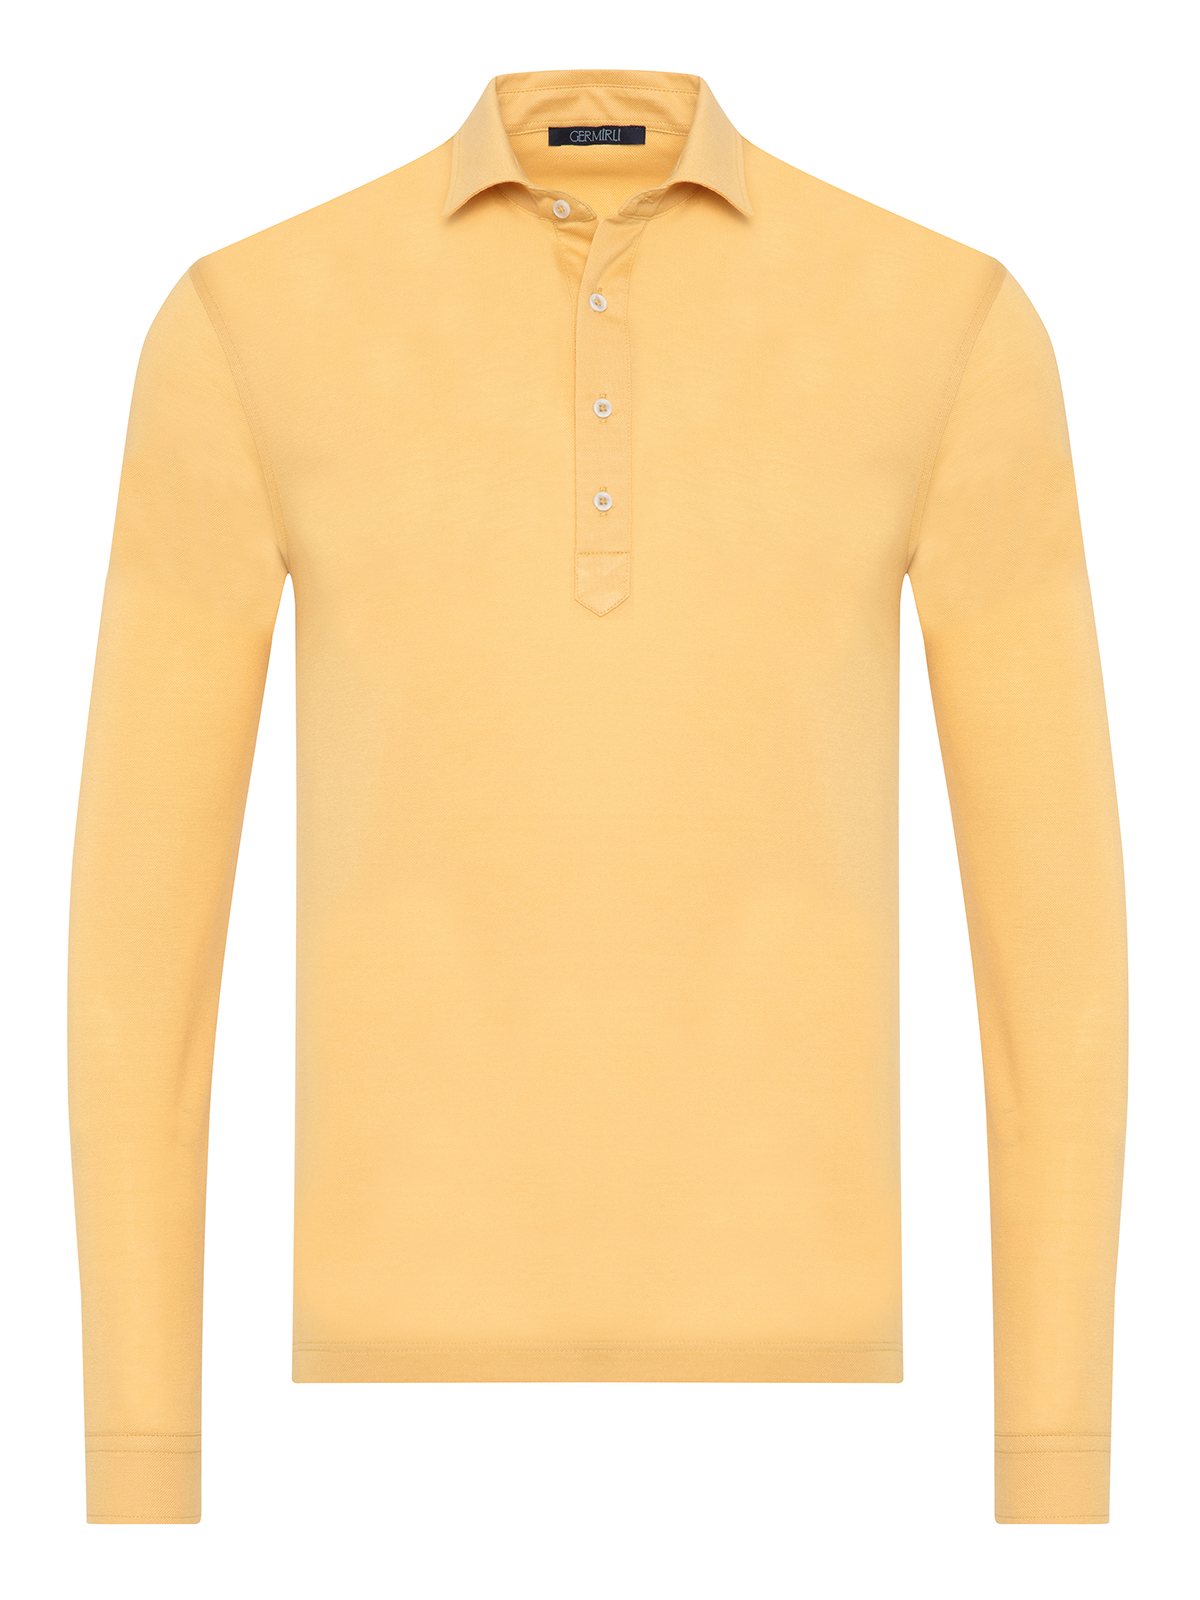 Germirli - Germirli Sarı Piquet Gömlek Yaka Regular Fit Merserize Uzun Kollu Tişört